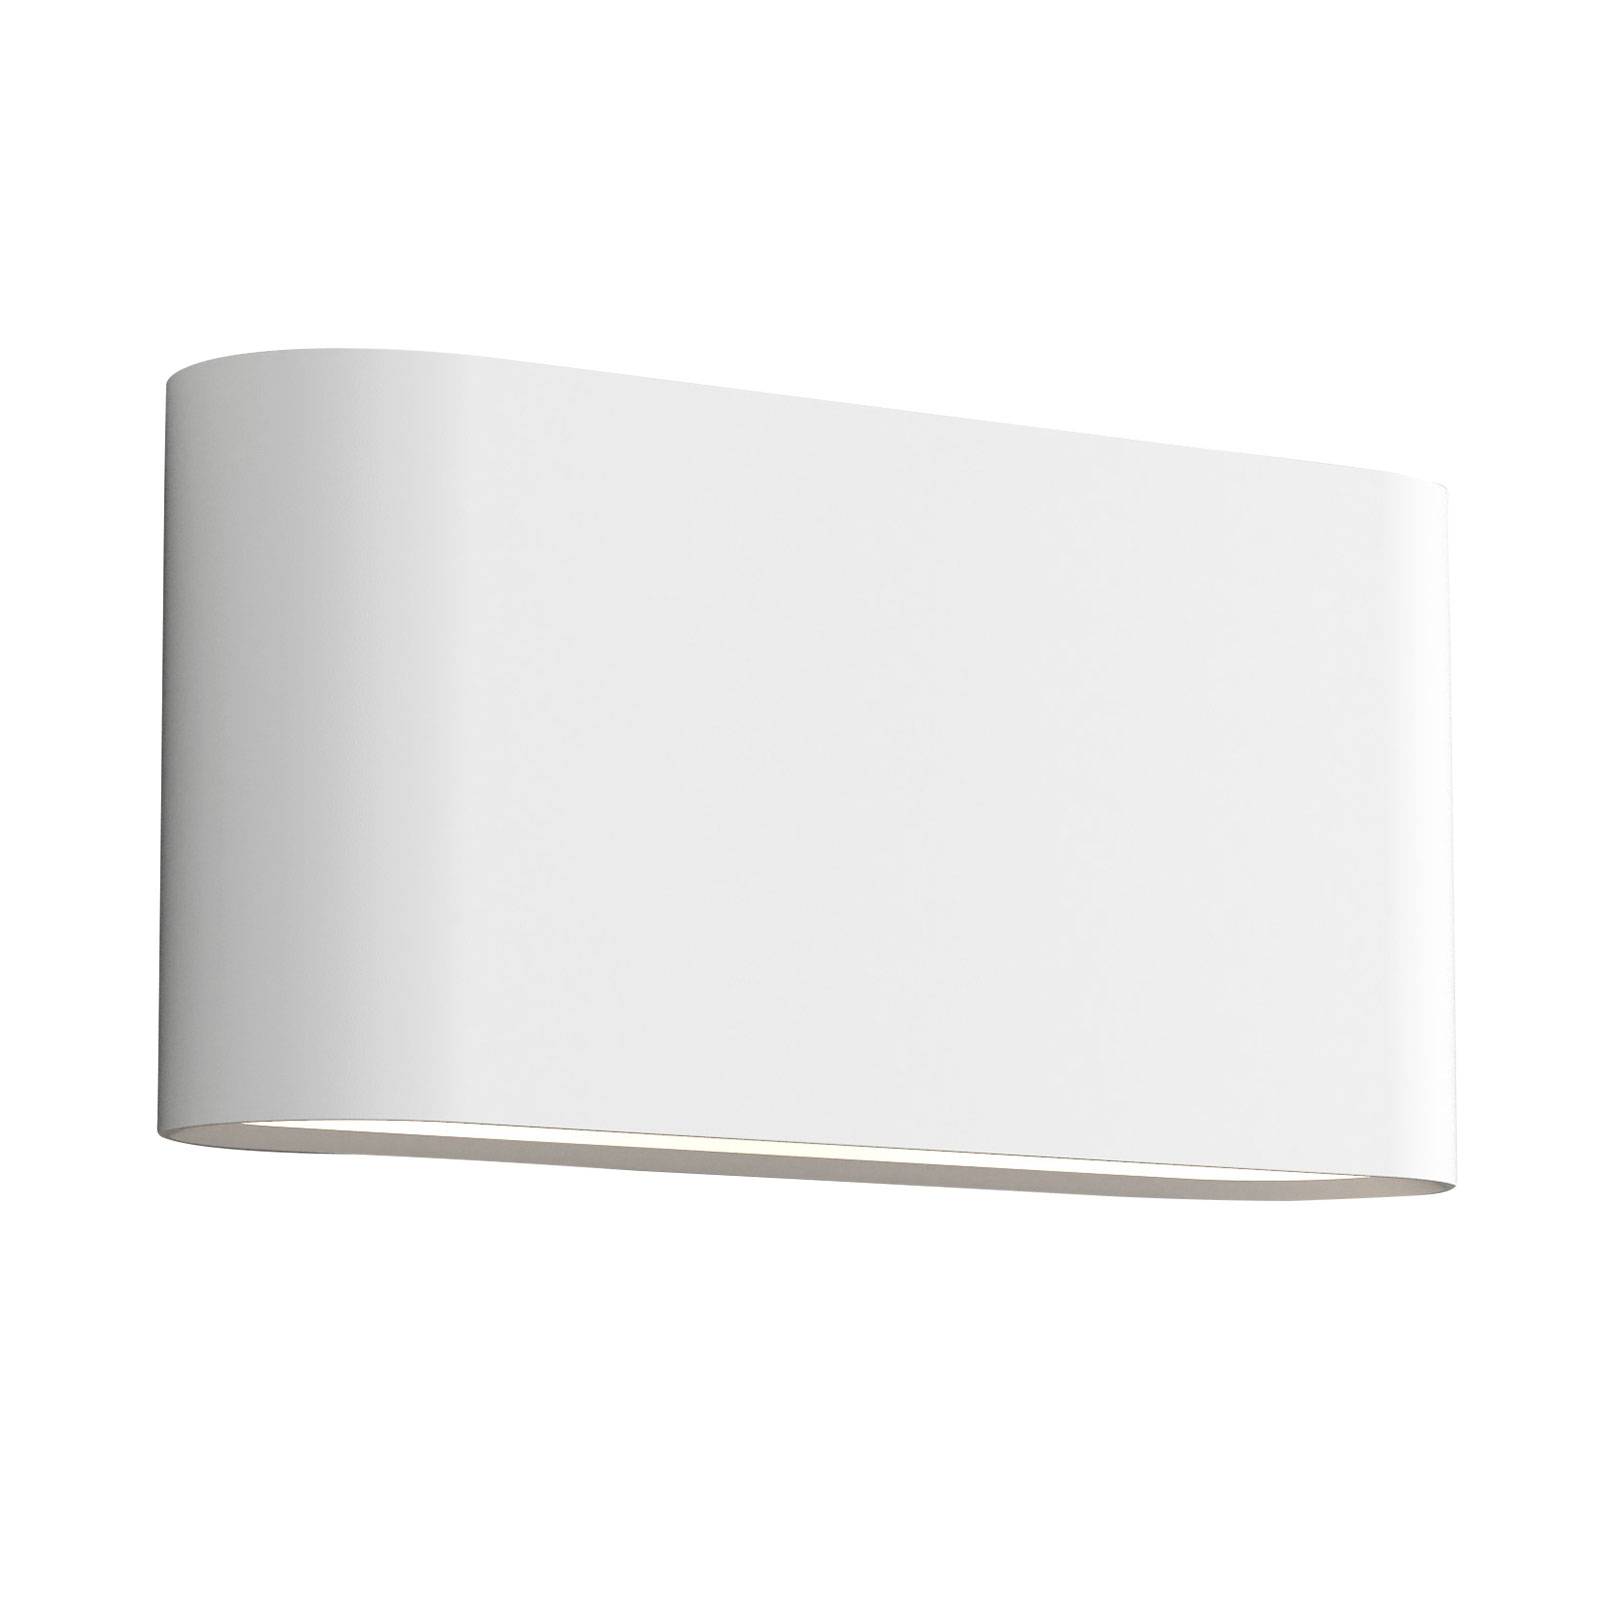 Astro Velo 390 wall light, plaster, width 39 cm